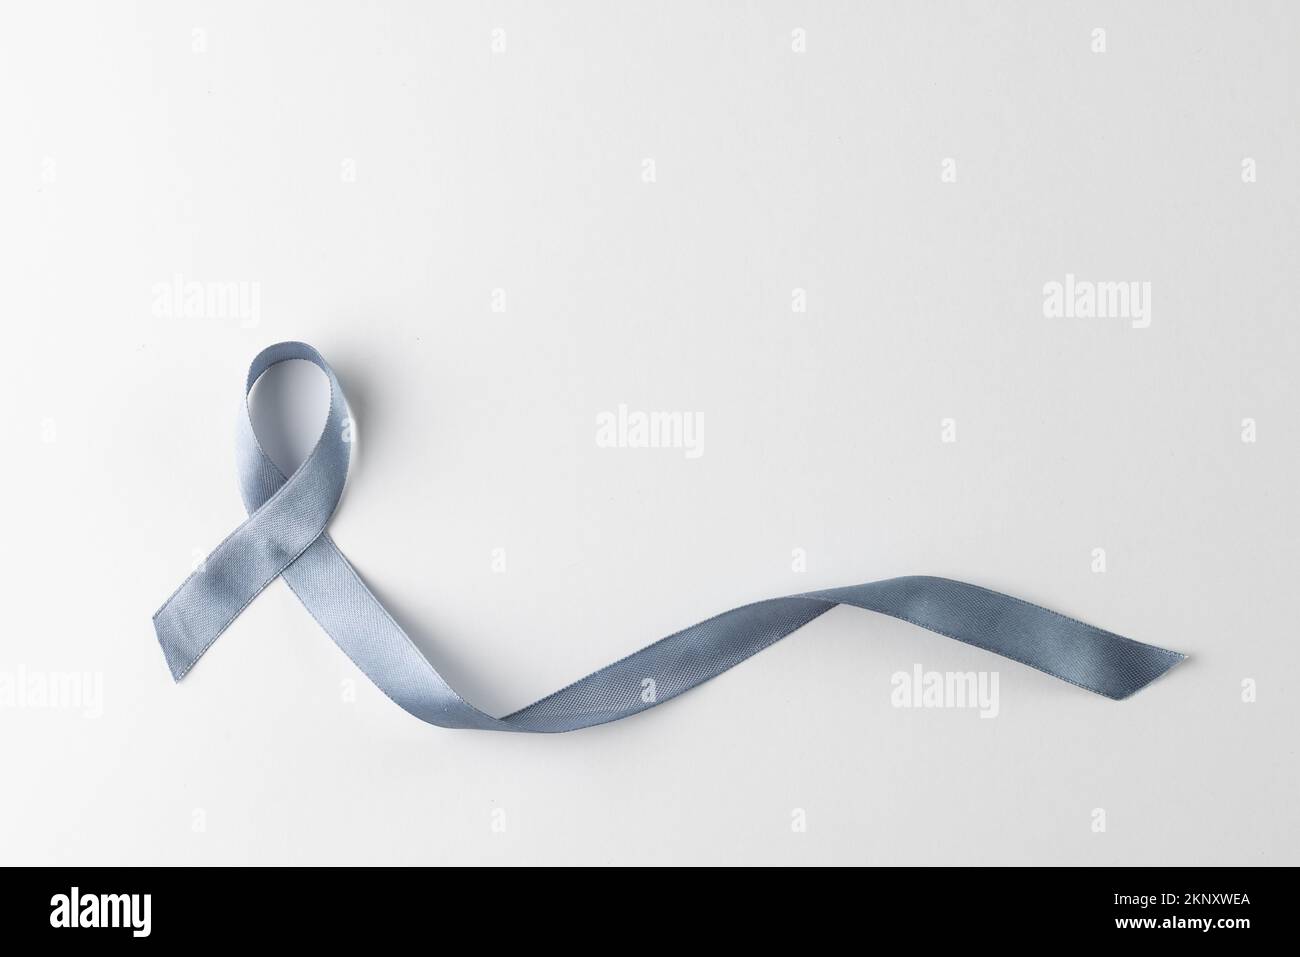 Composition de ruban gris pour la sensibilisation au cancer, sur fond blanc avec espace de copie Banque D'Images